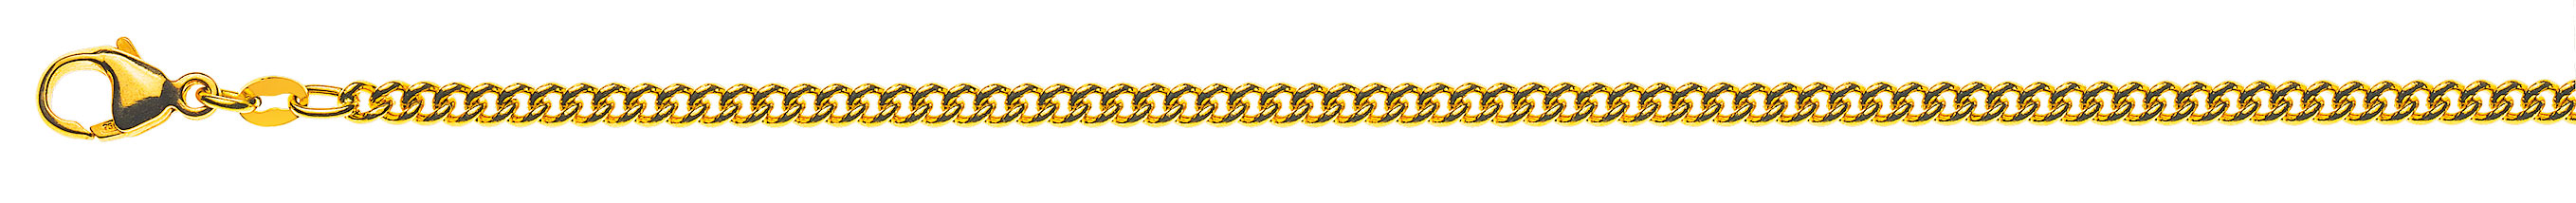 AURONOS Prestige Halskette Gelbgold 18K Rundpanzerkette 50cm 2.8mm